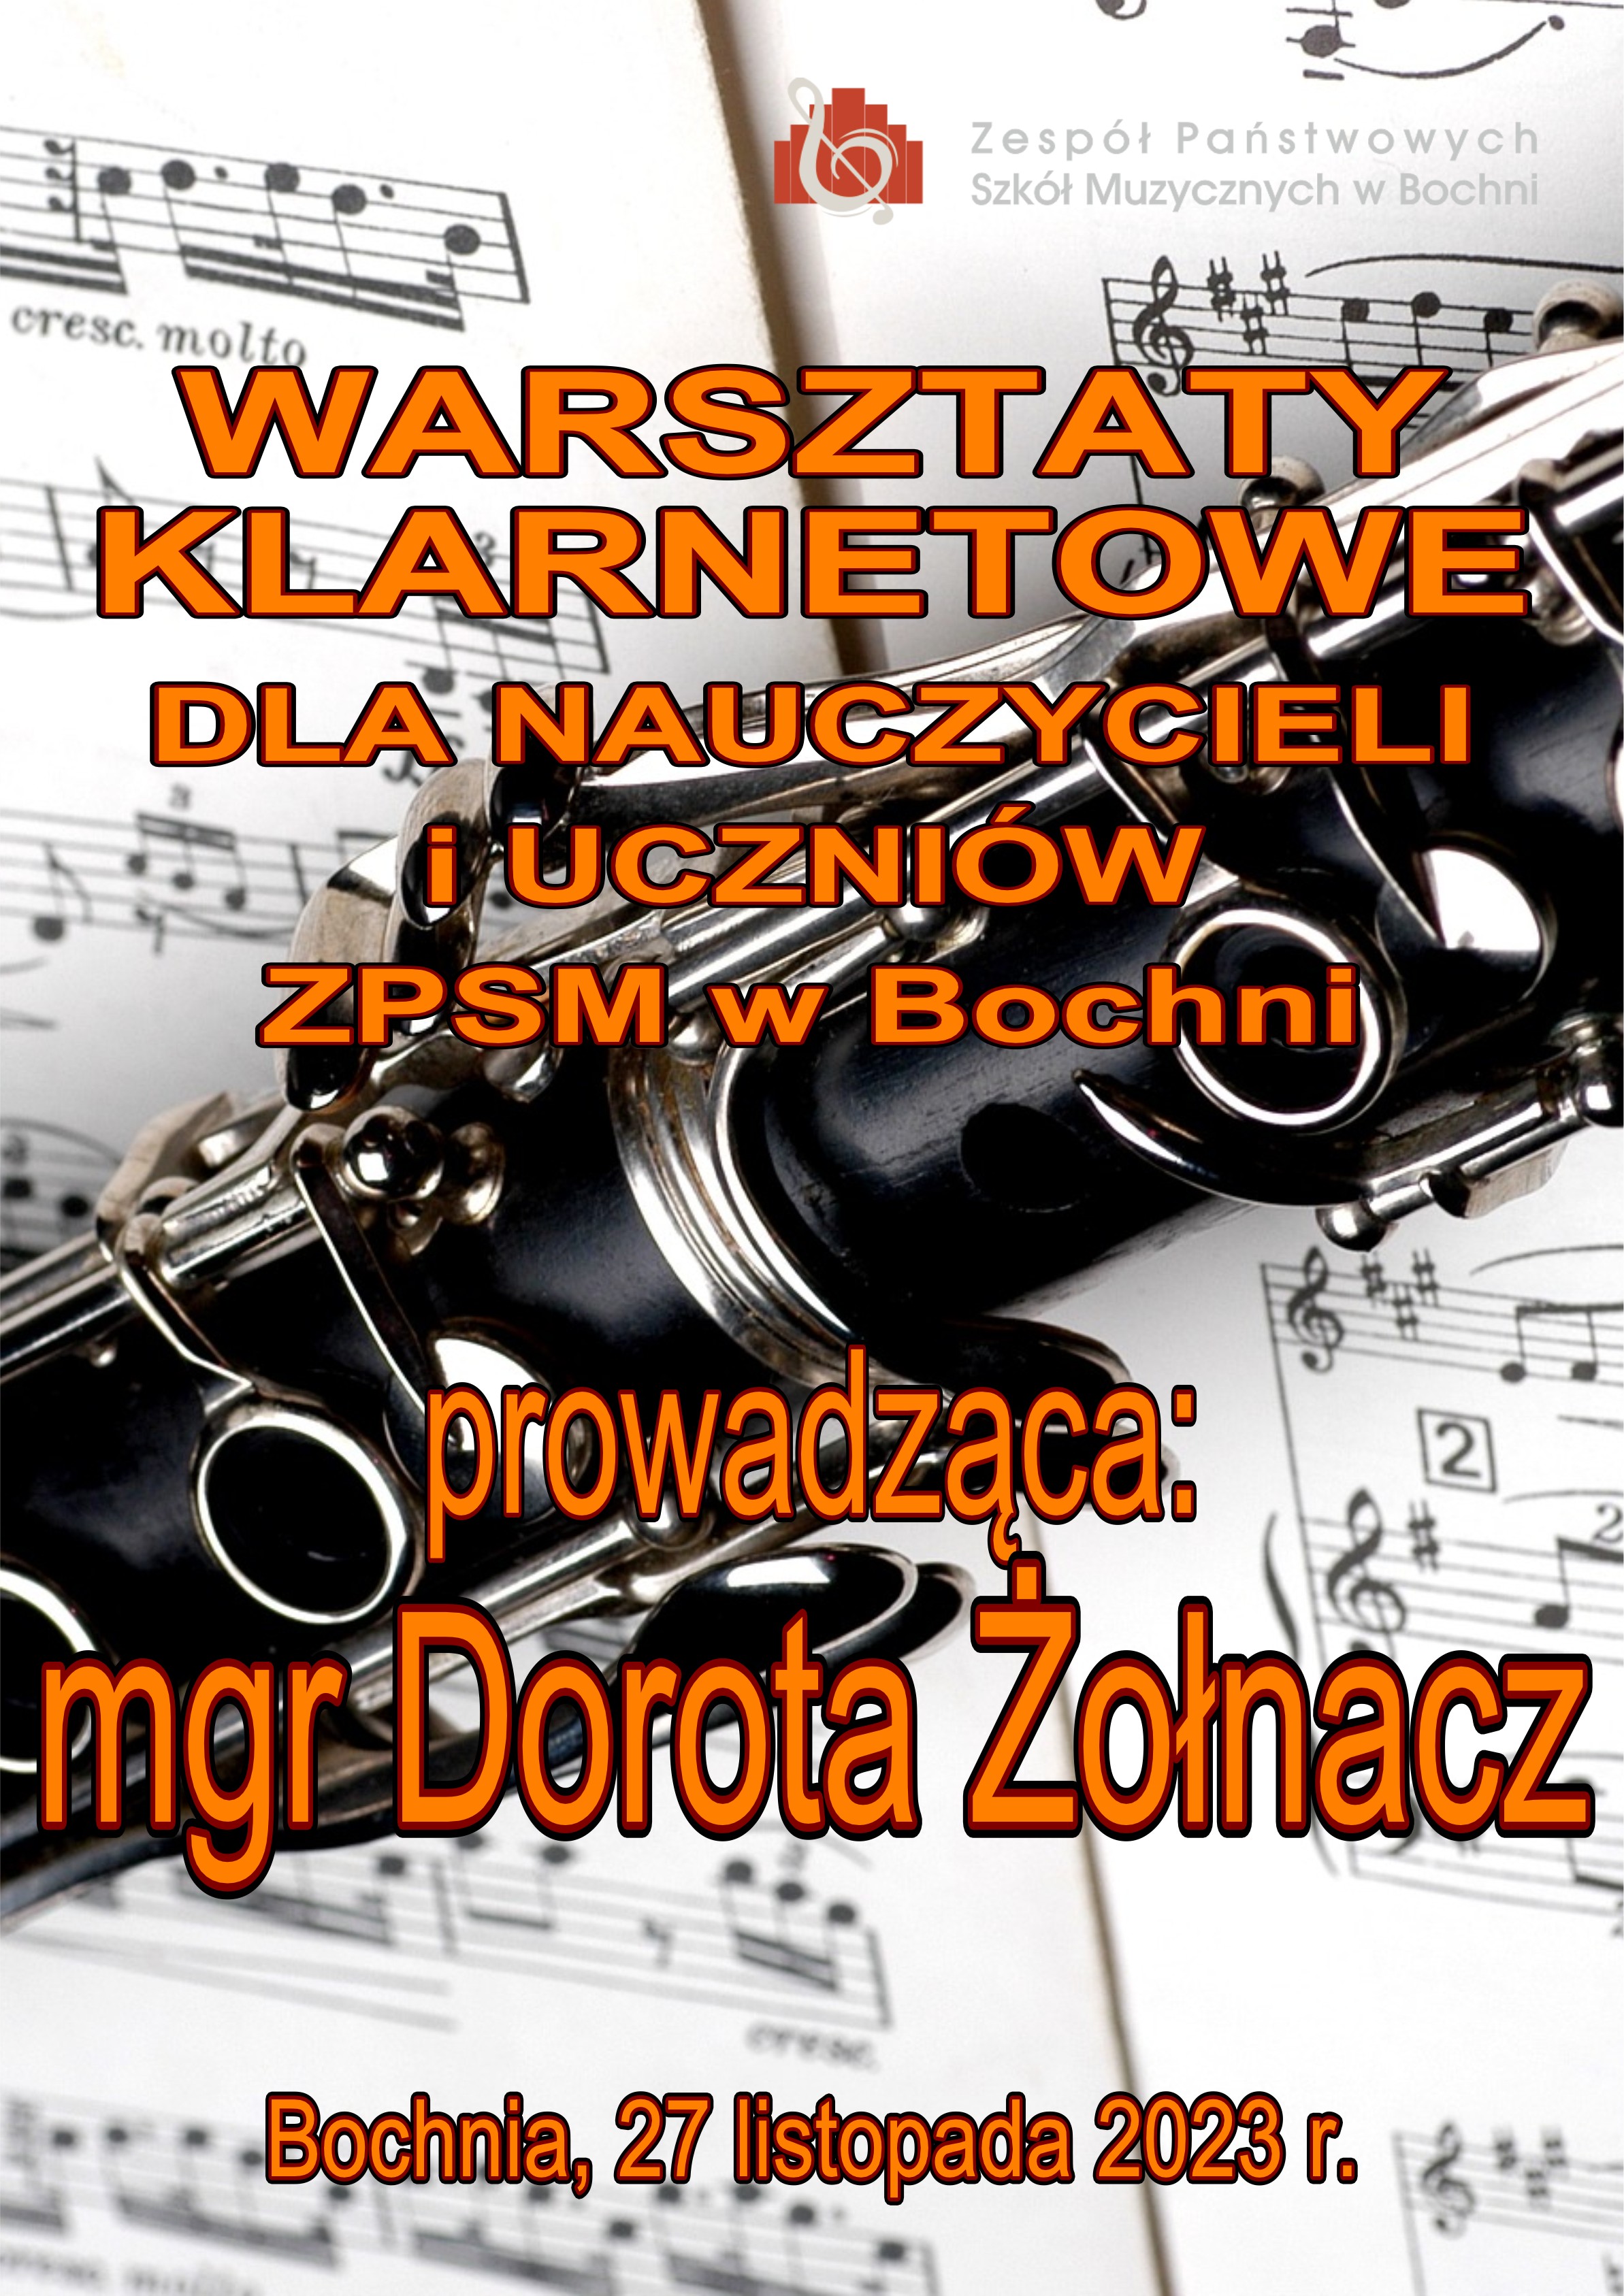 Warsztaty klarnetowe z panią Dorotą Żołnacz 27.11.2023 r.